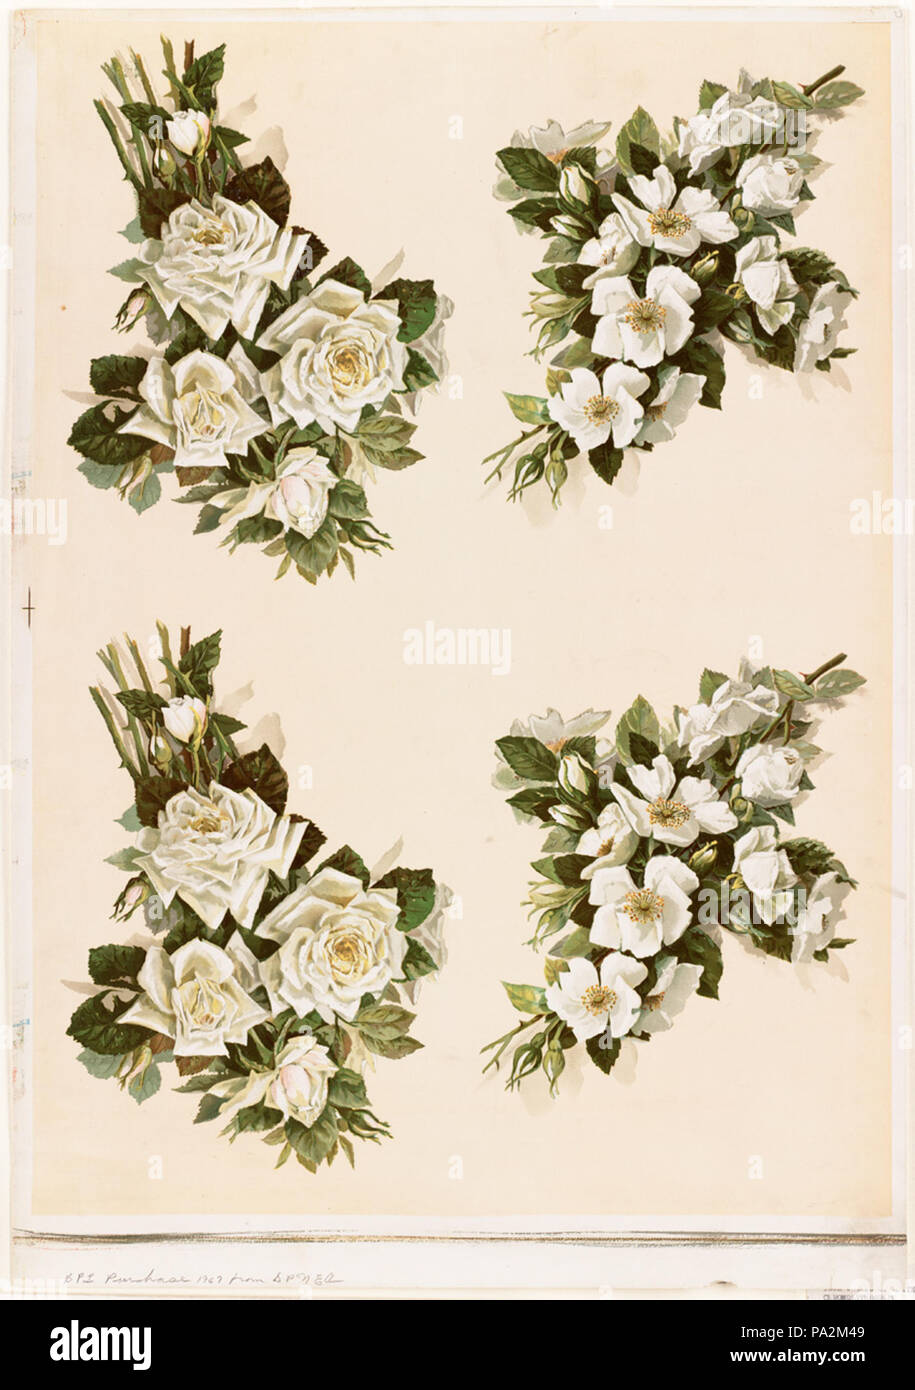 665 Quattro gruppi di rose bianche da Boston Public Library Foto Stock